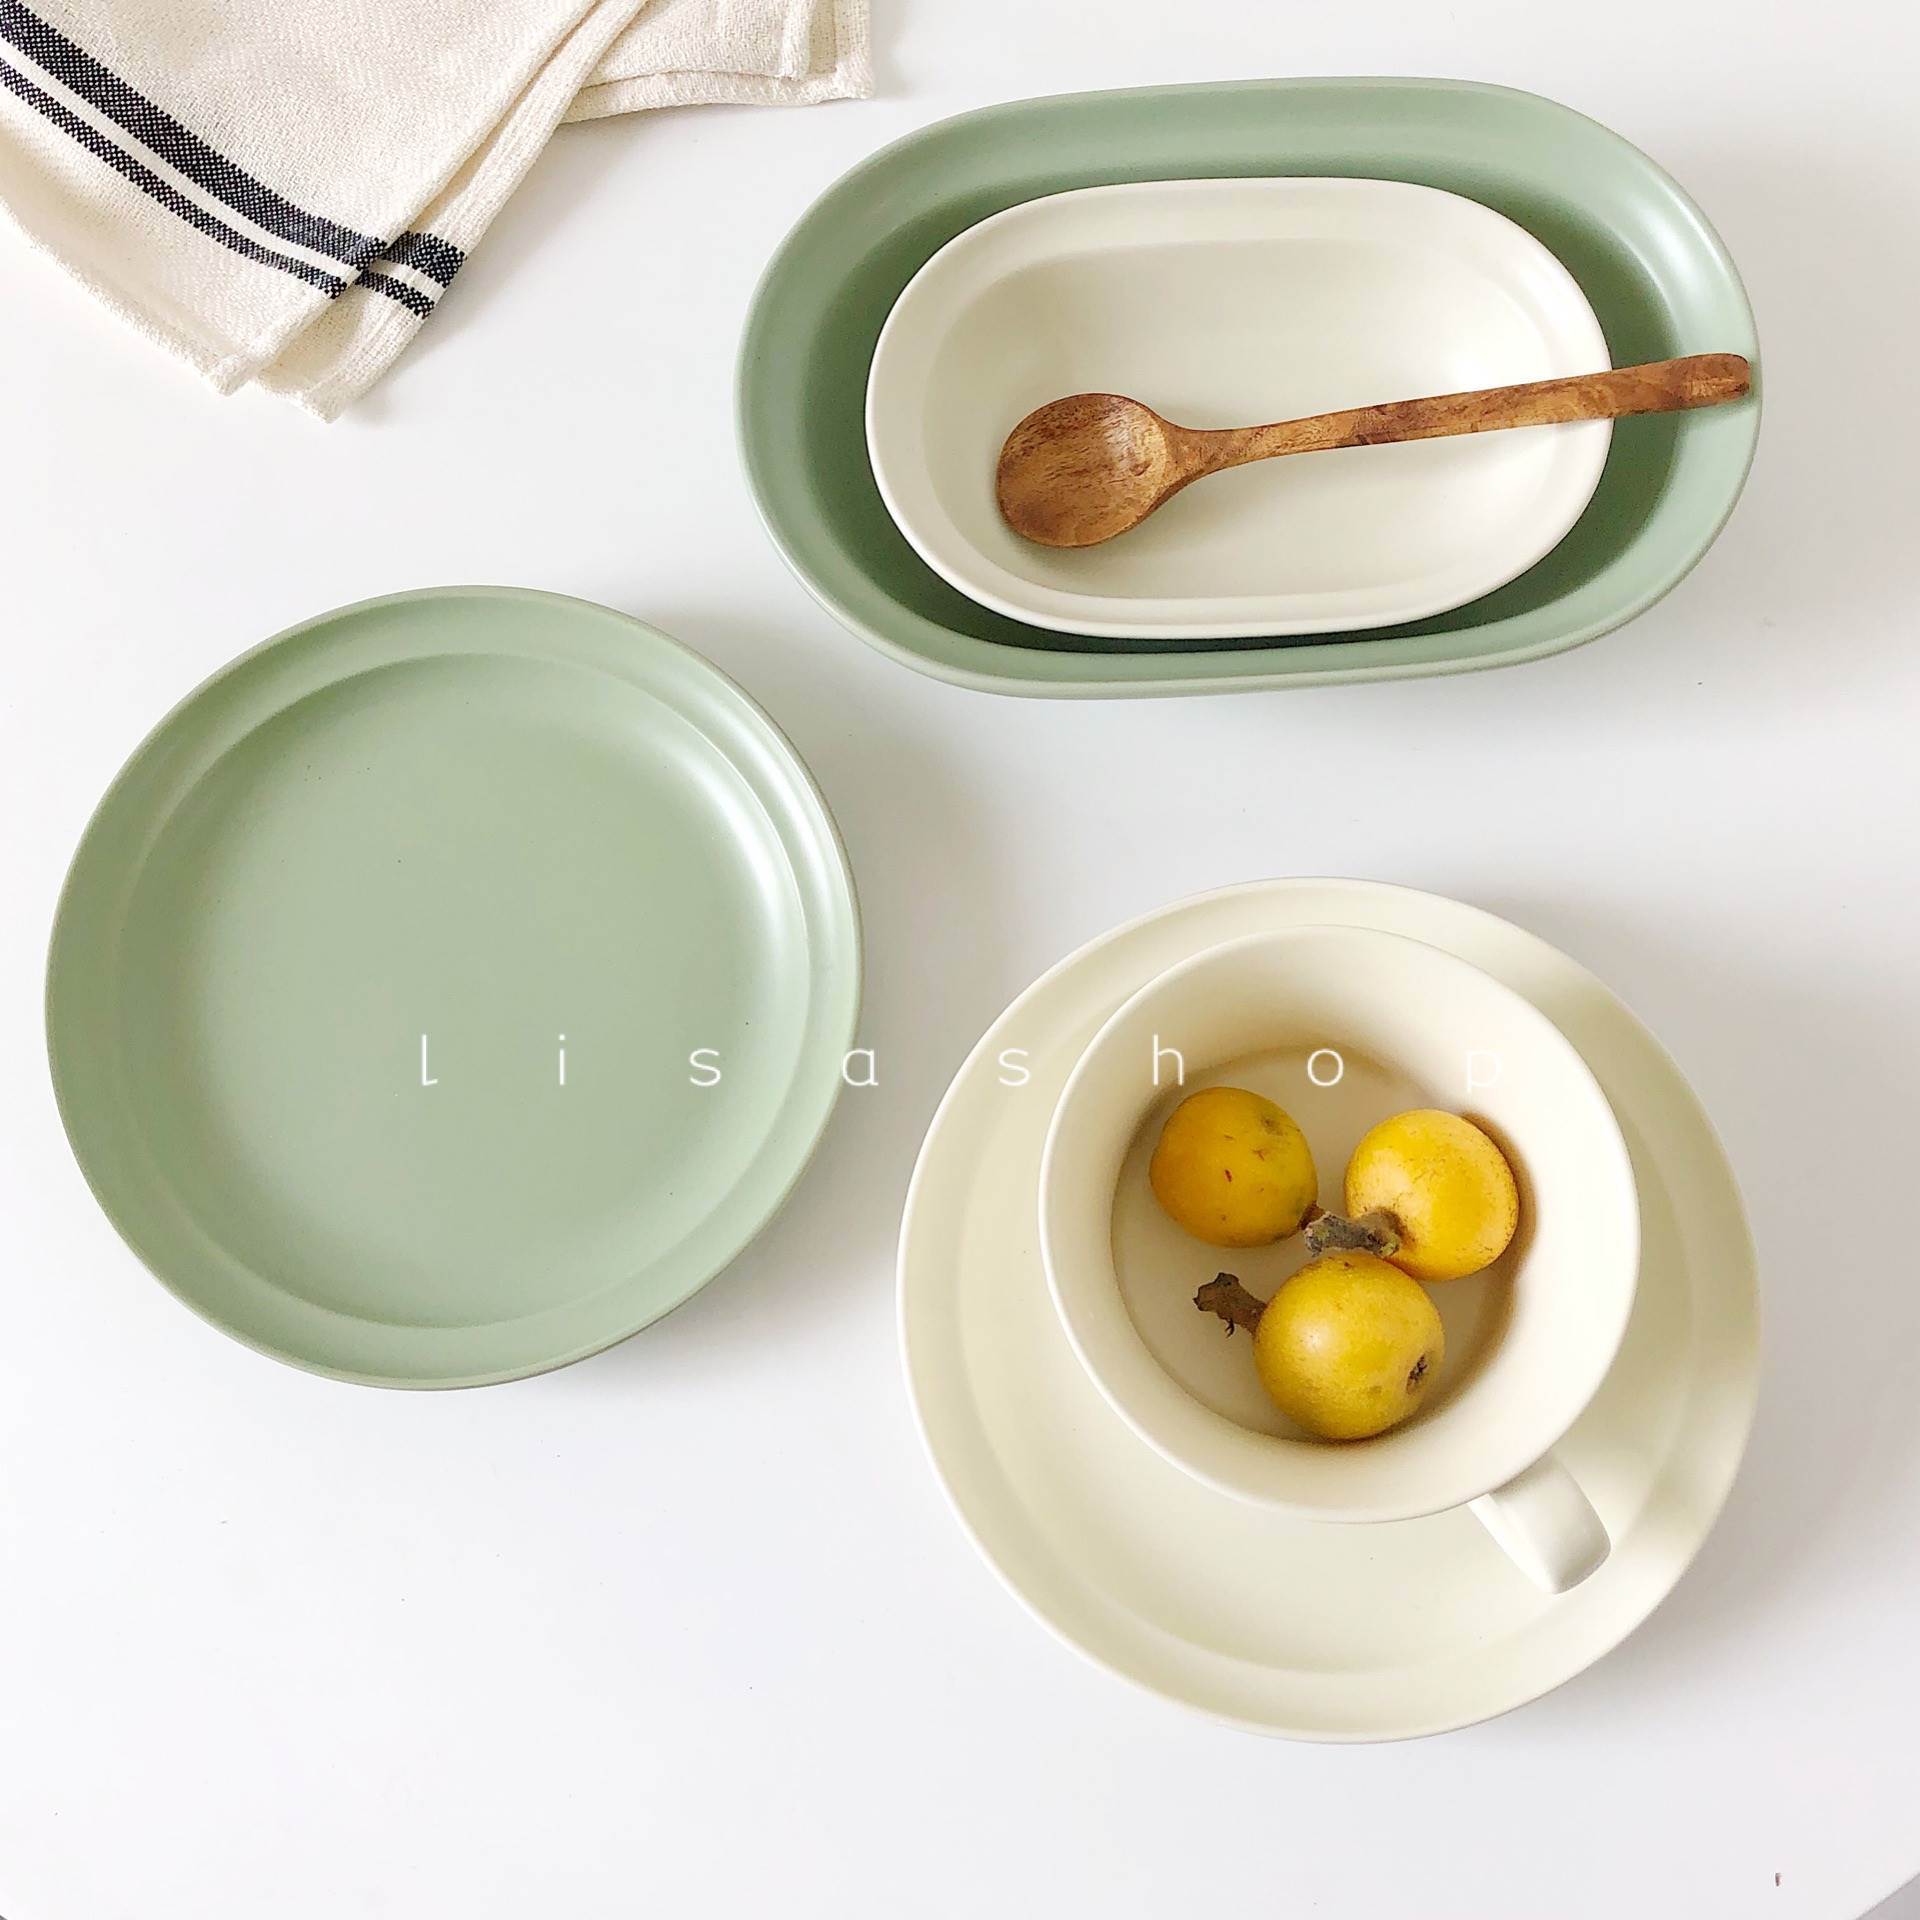 LS简约北欧韩式陶瓷家用纯色餐具平盘早餐意面盘燕麦碗平盘椭圆盘